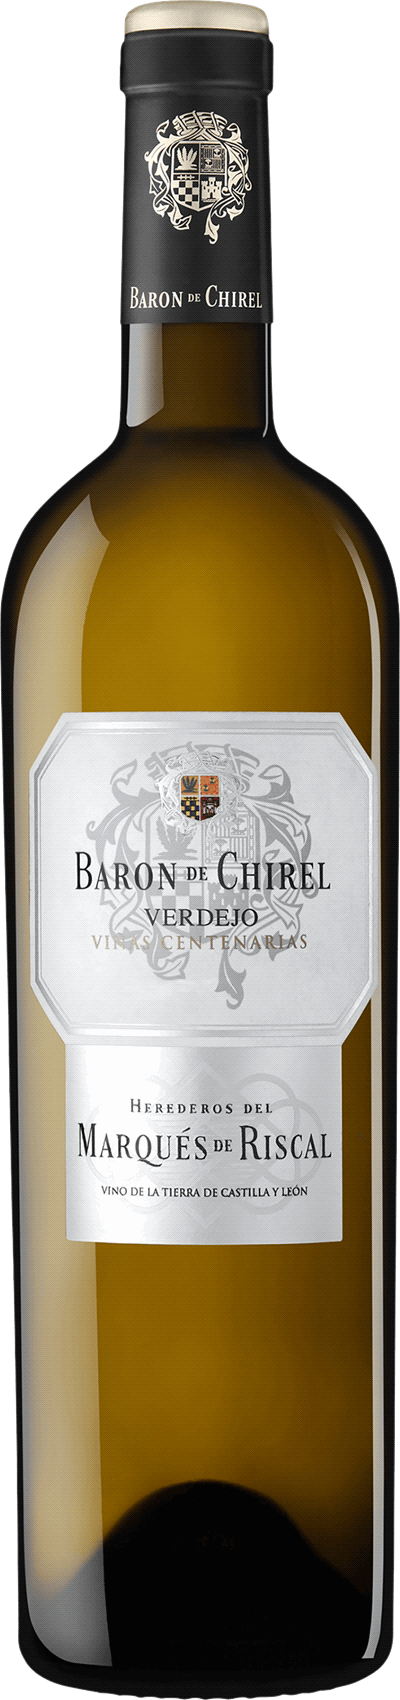 Baron de Chirel Verdejo